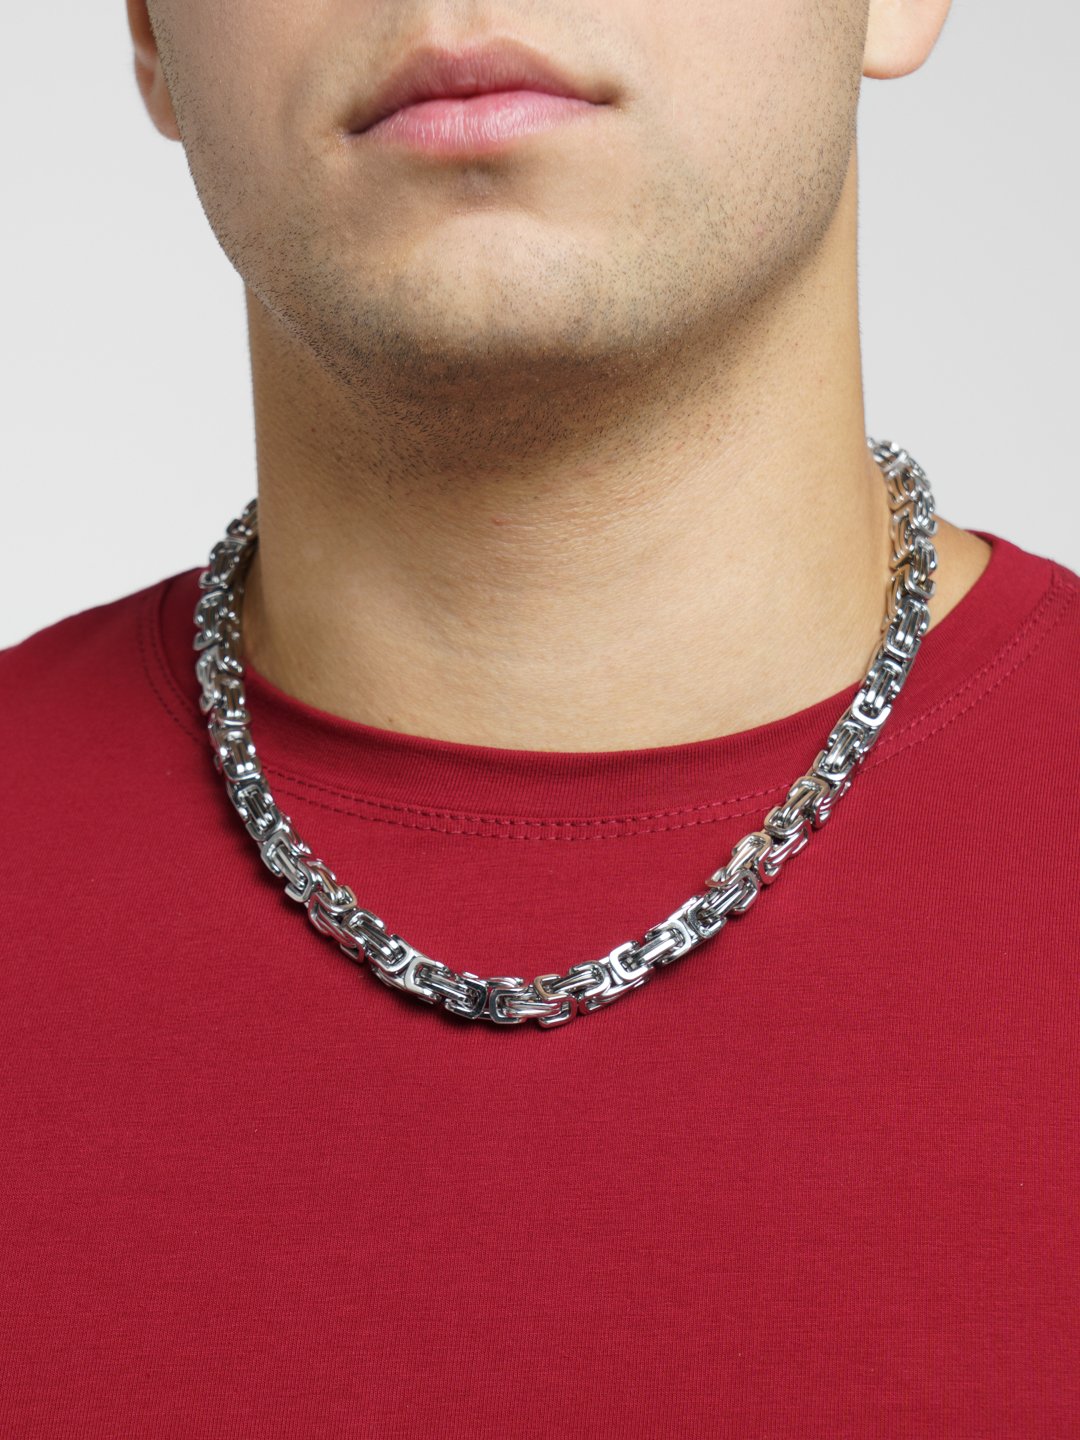 Цепь мужская на шею, нержавеющая сталь купить по цене 716 ₽ винтернет-магазине KazanExpress